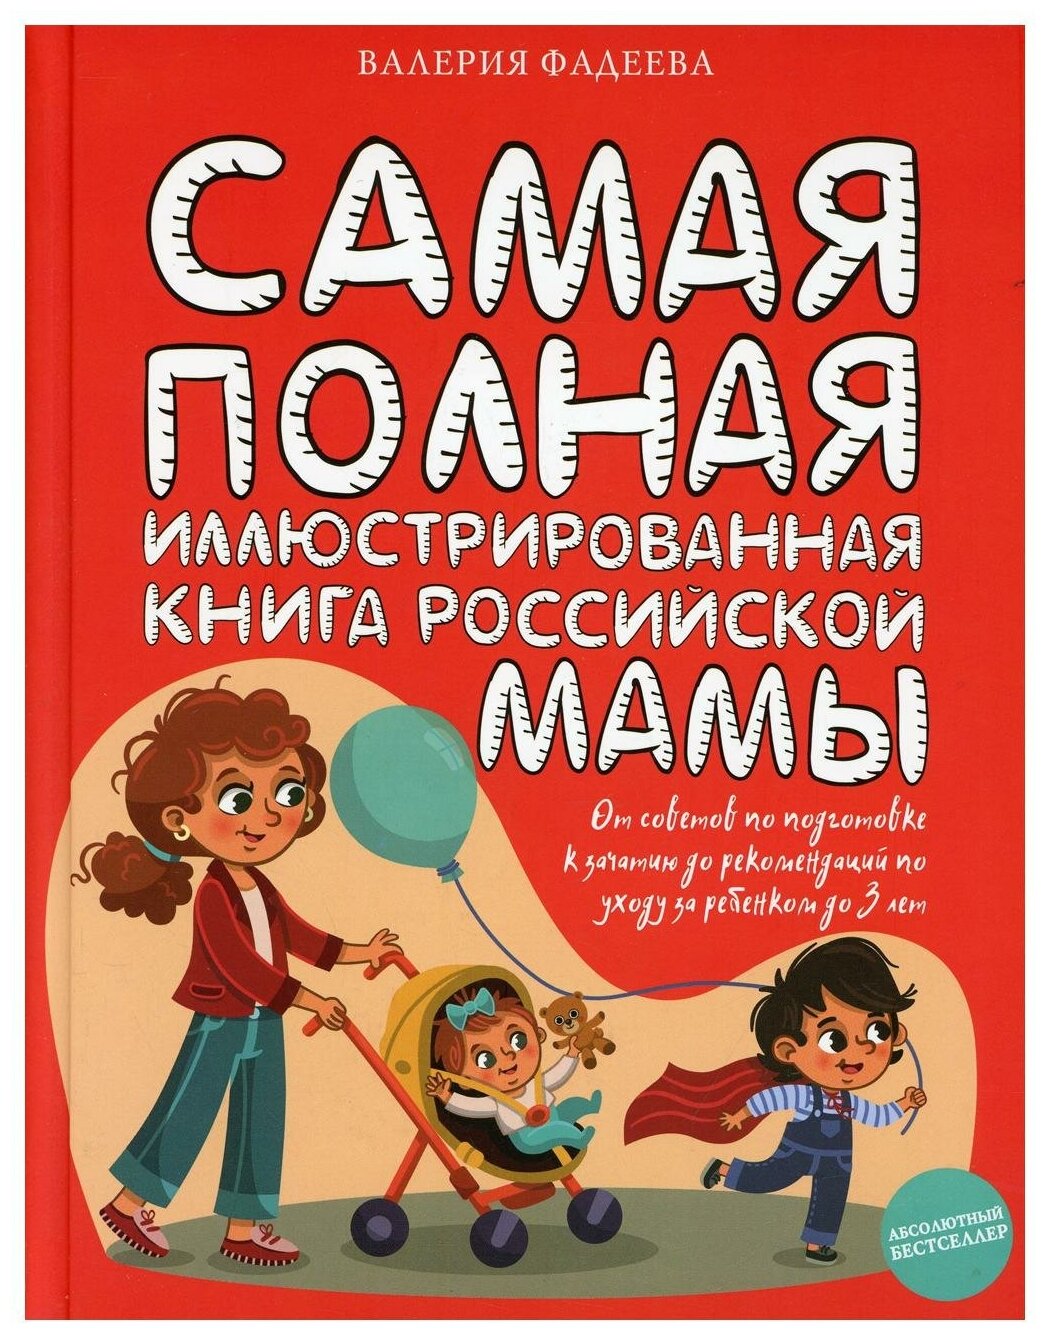 Самая полная иллюстрированная книга российской мамы - фото №1